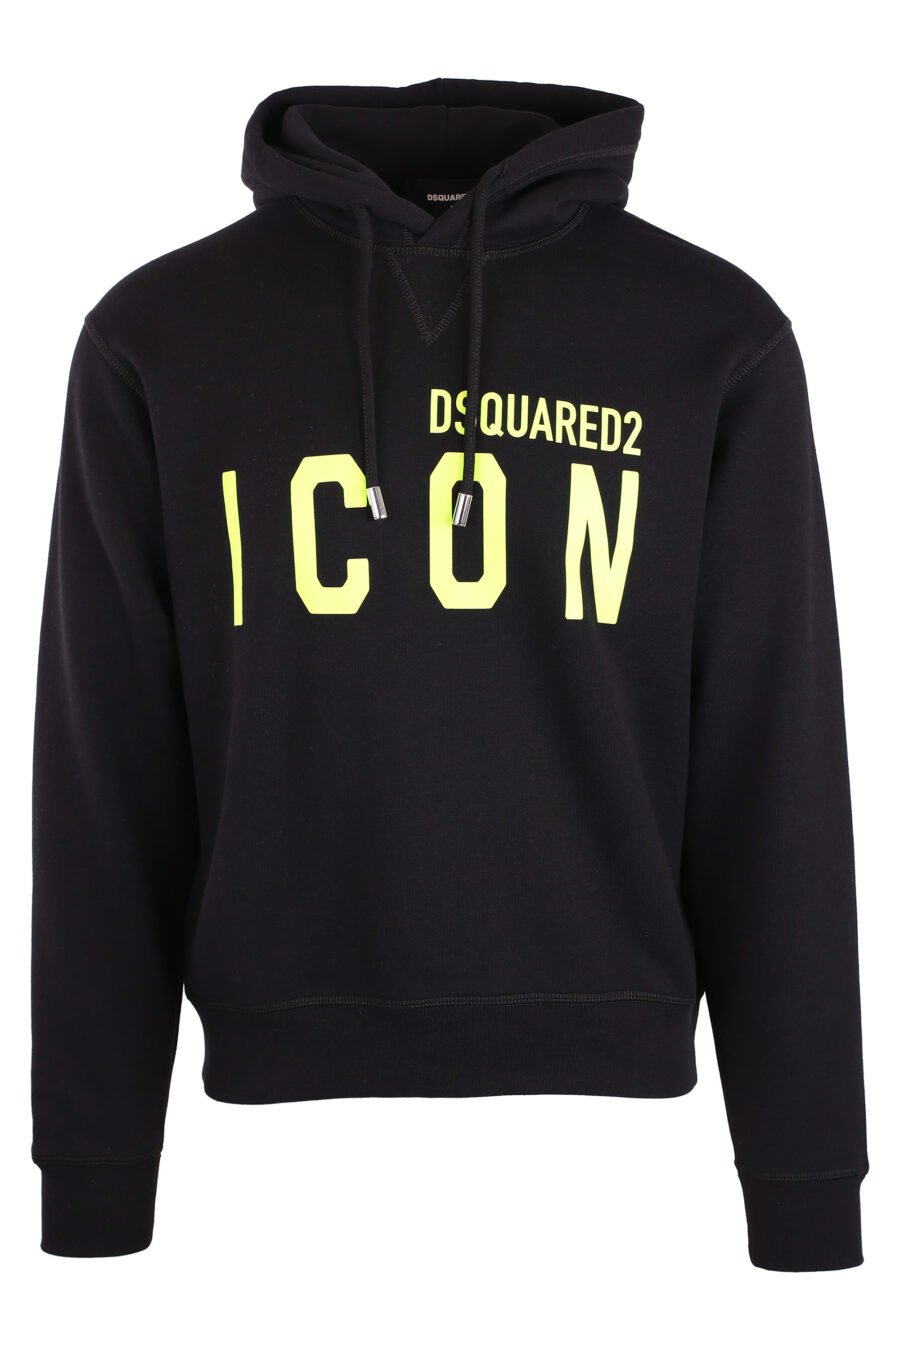 Black hooded sweatshirt with yellow double "icon" logo - IMG 8952